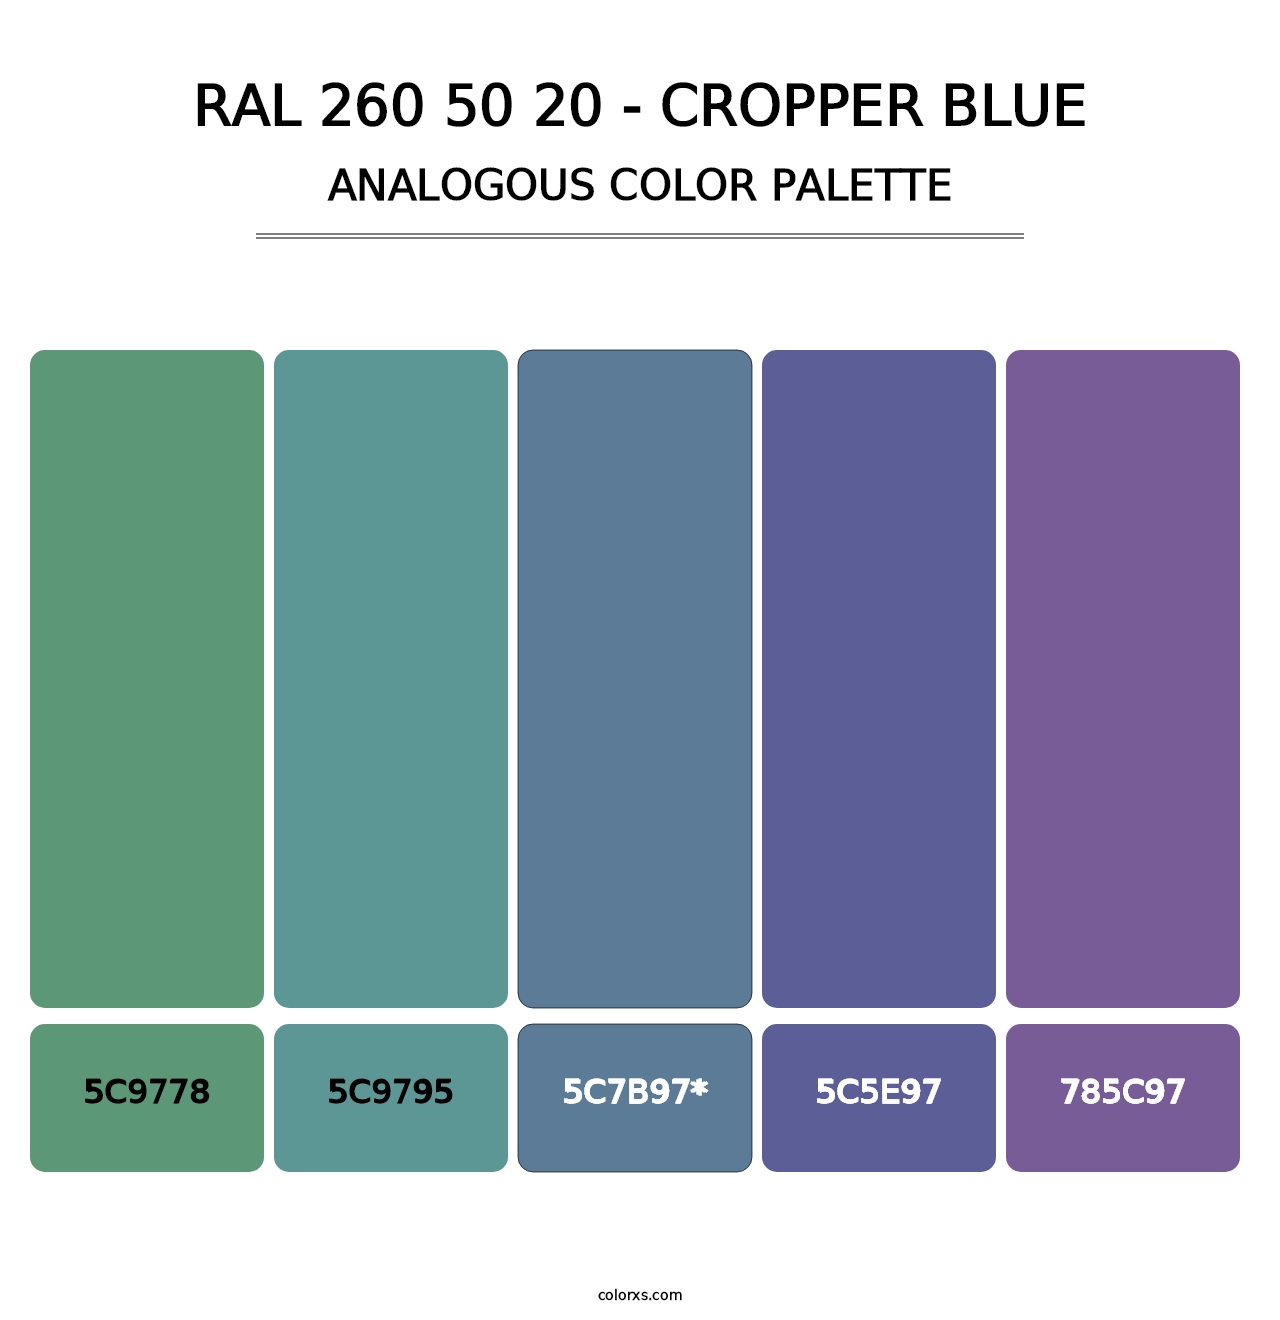 RAL 260 50 20 - Cropper Blue - Analogous Color Palette